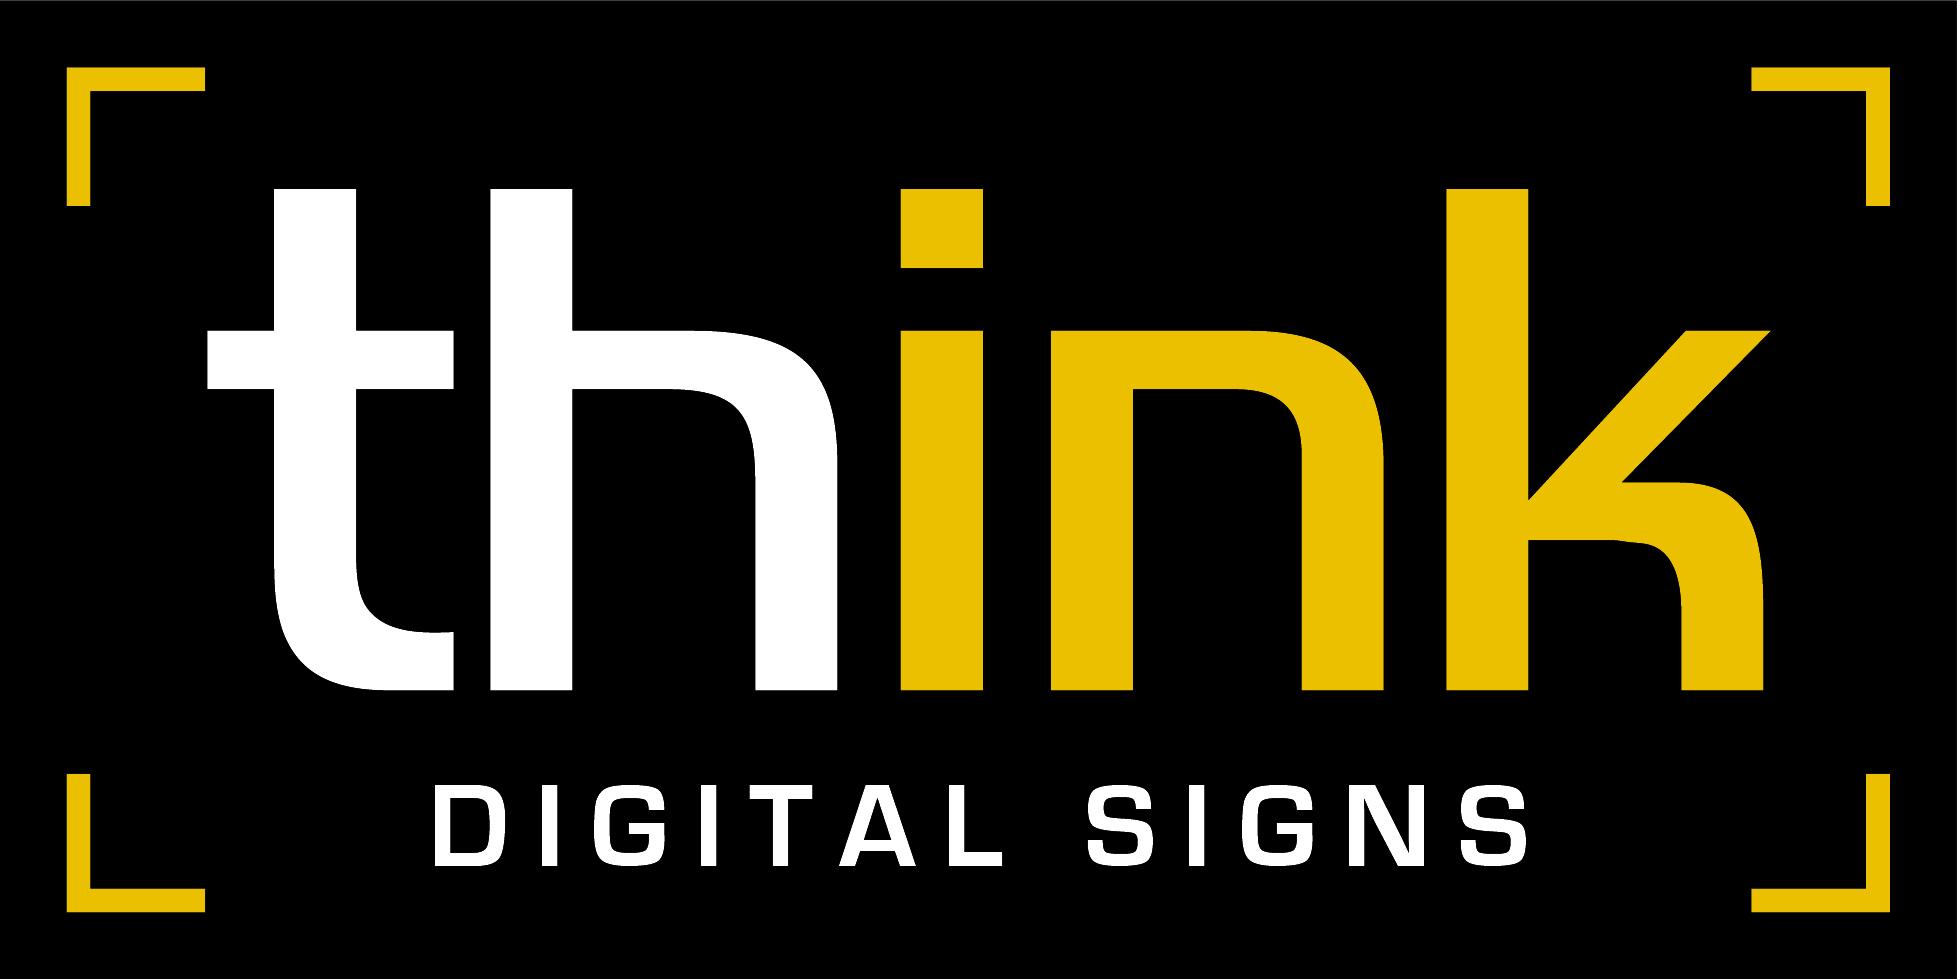 Think Digital logo